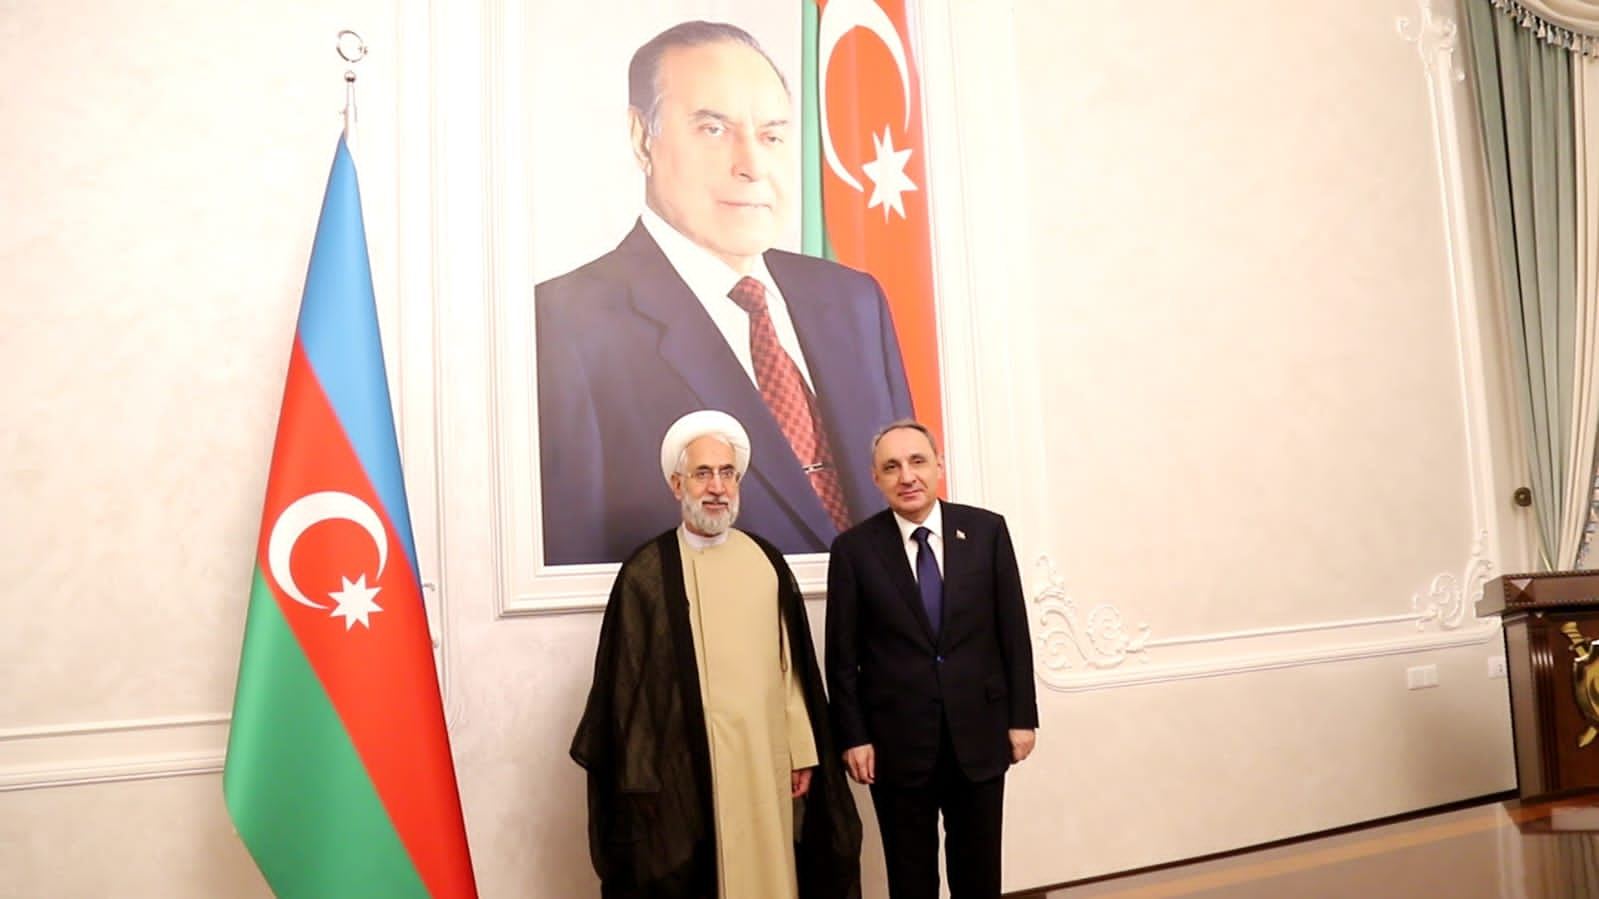 В Азербайджан прибыл генпрокурор Ирана - обсуждены уголовные дела Фарида Джафарли и о нападении на посольство Азербайджана (ФОТО)